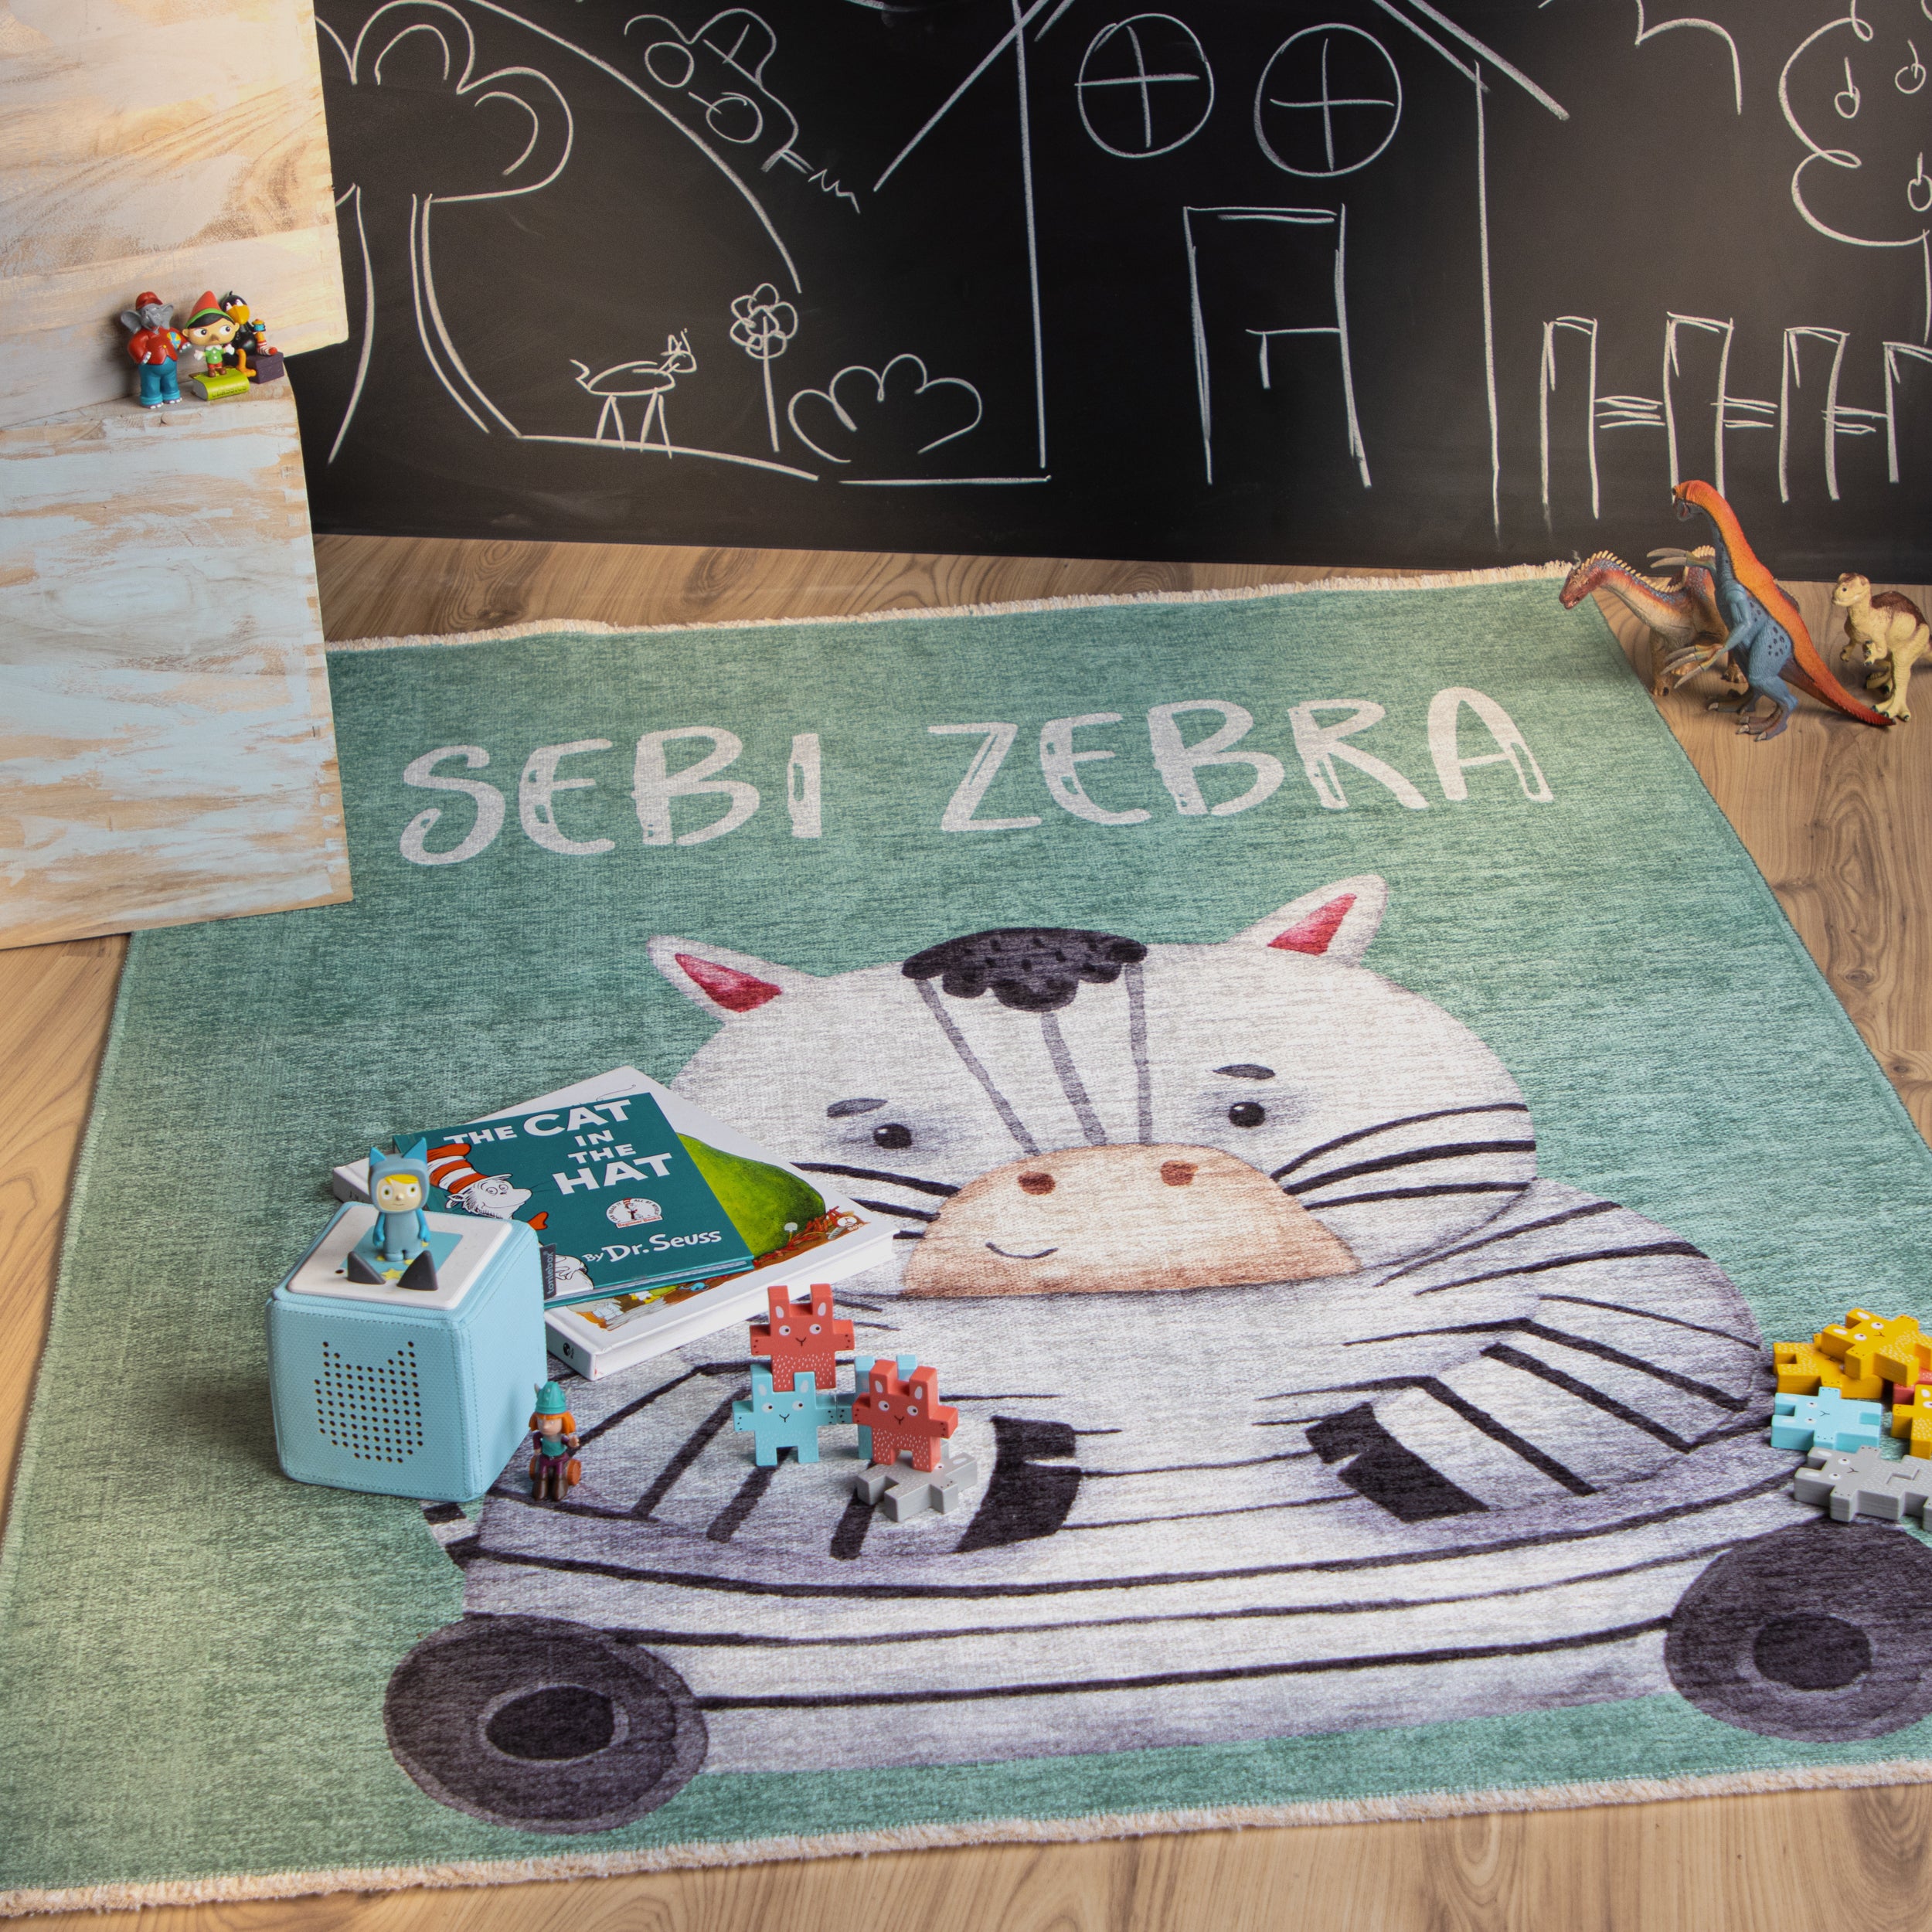 My Greta 614 zebra Teppich: Für eine glückliche Kindheit und eine nachhaltige Zukunft